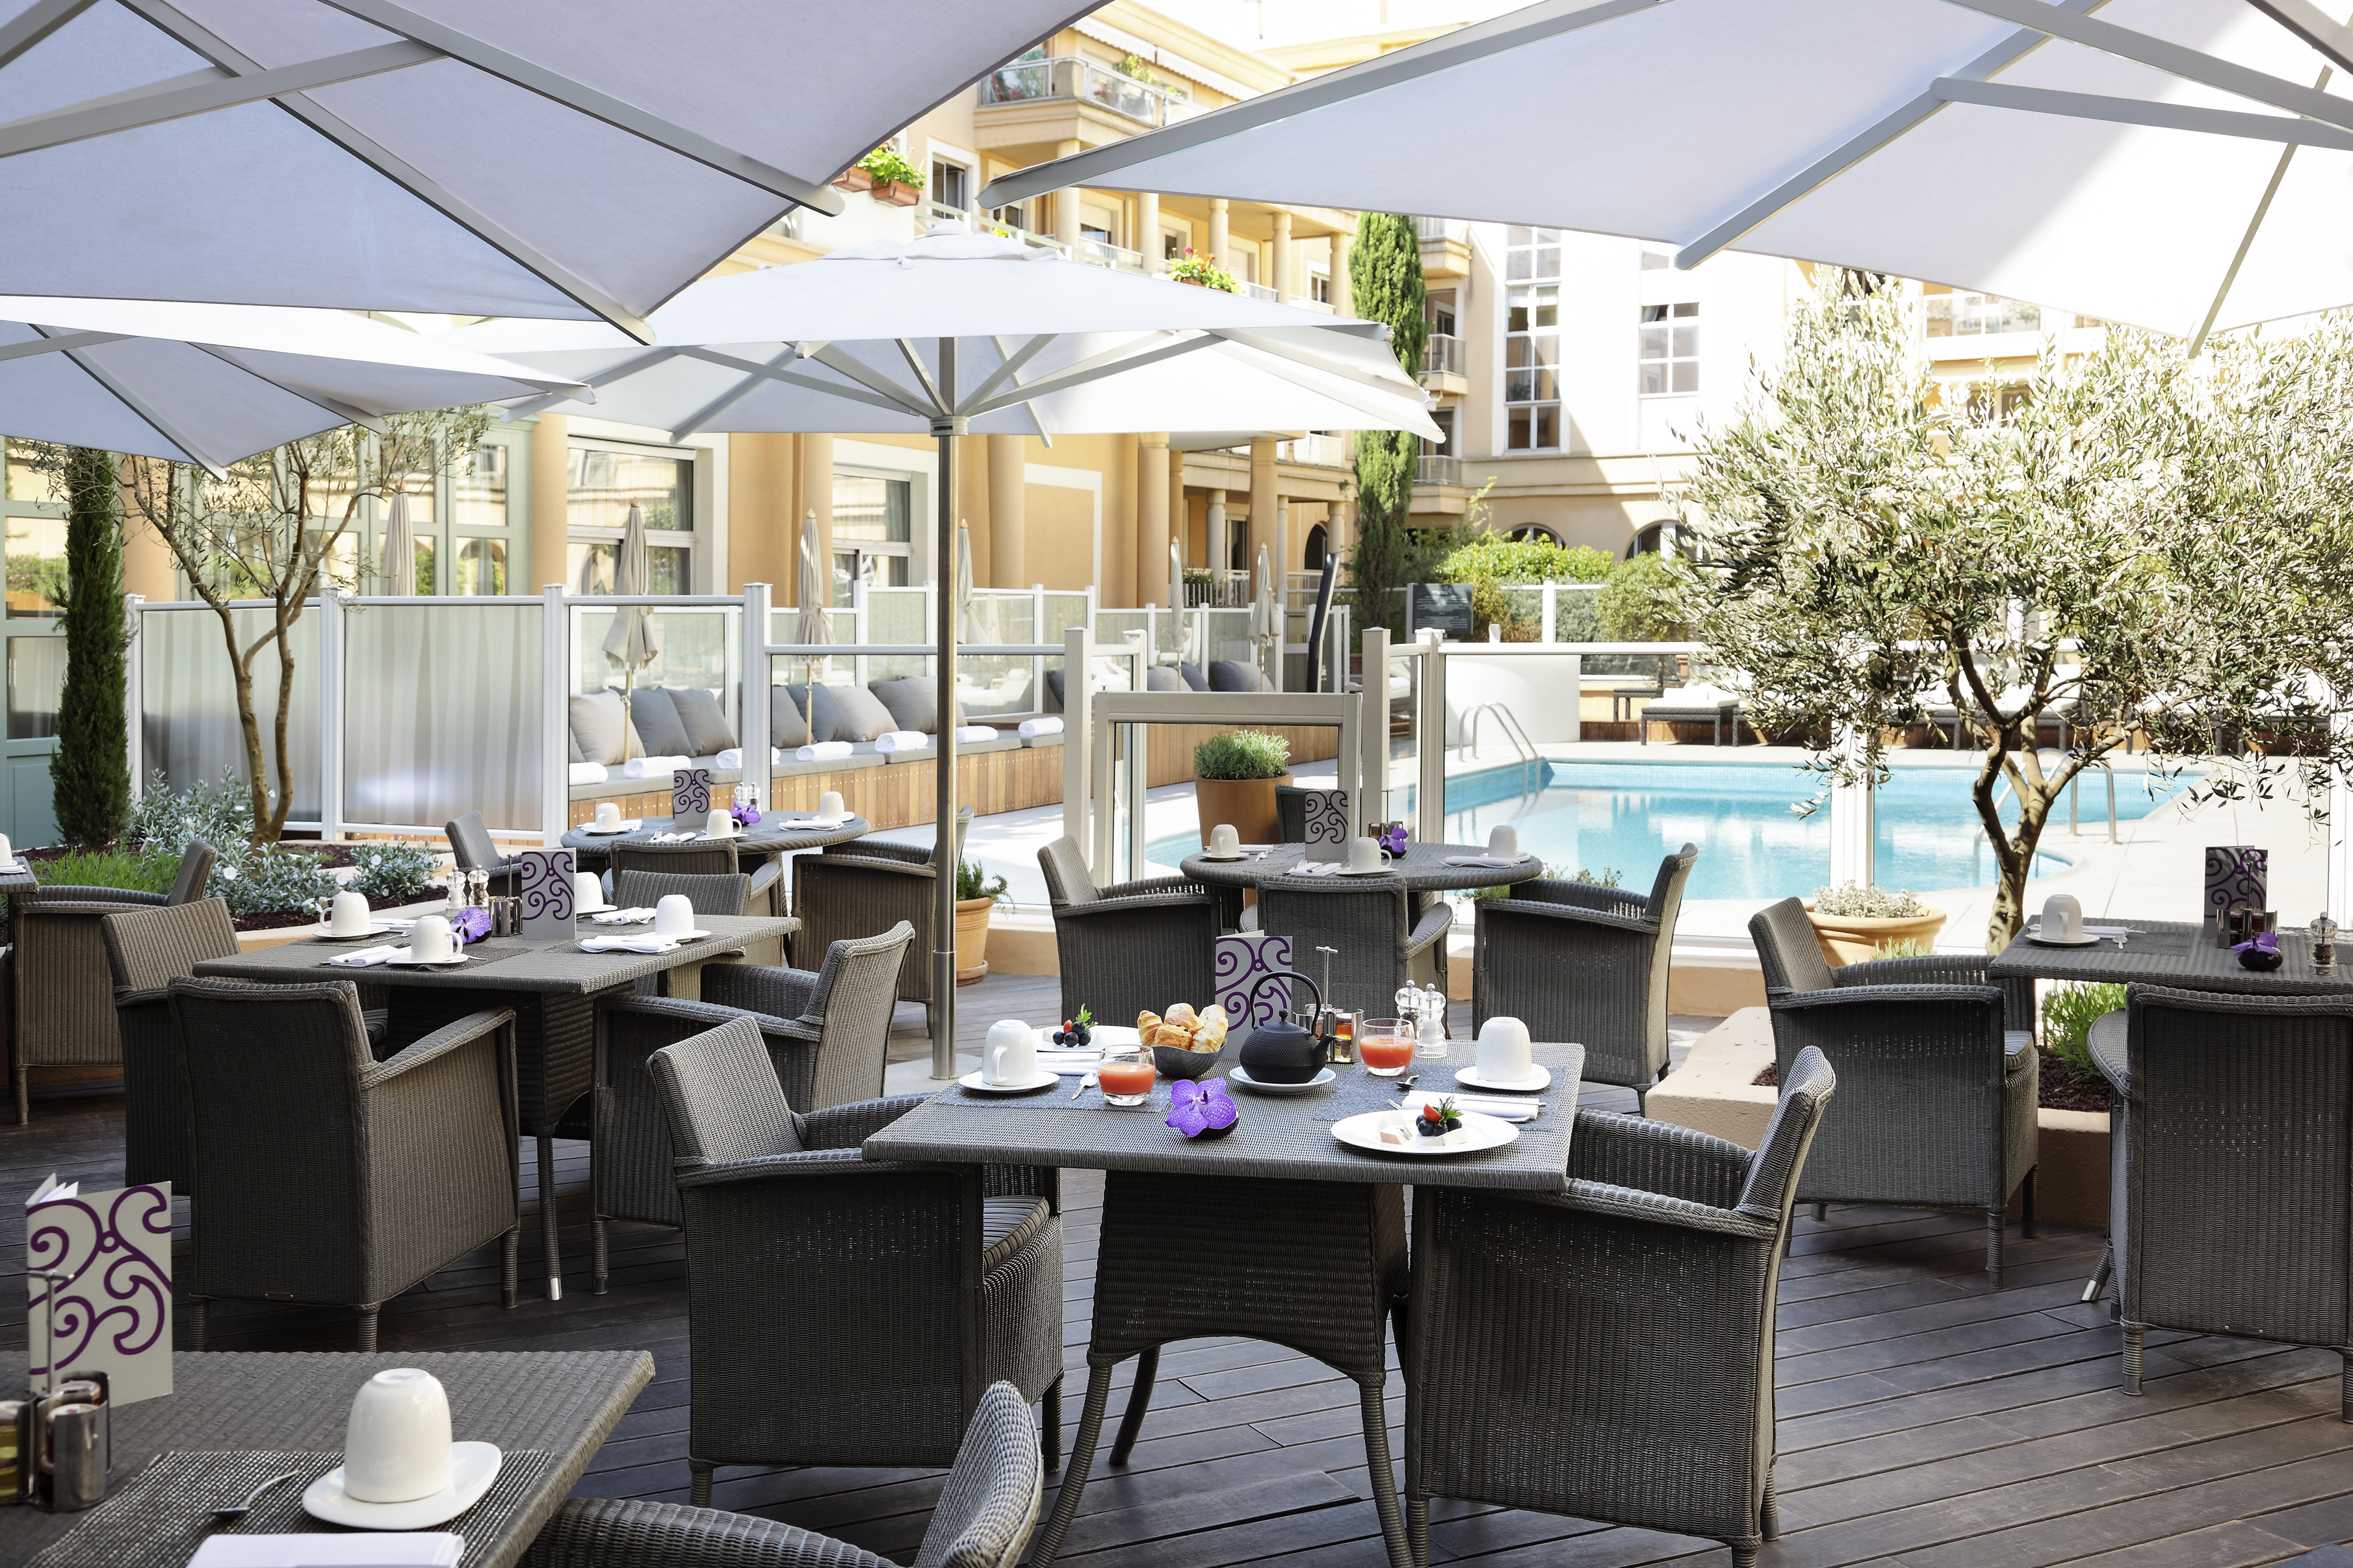 restaurant terrasse ; piscine ; sofitel ; grand hotel roi rené ; aix en provence ; sud de la france ; MGALLERY COLLECTION ; hôtel 4 étoiles 